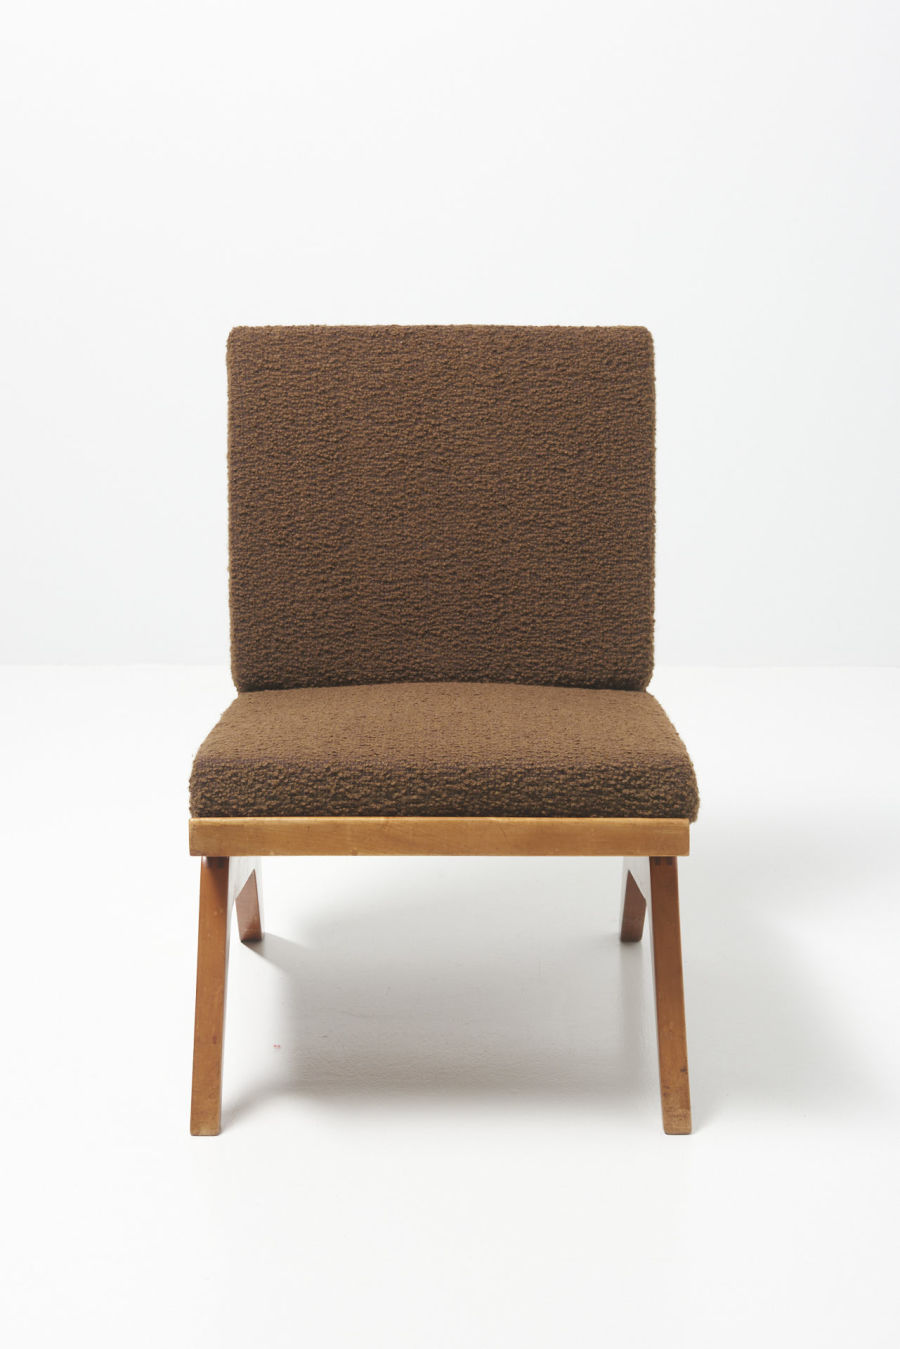 modestfurniture-vintage-3014-easy-chair-bovenkamp02_1